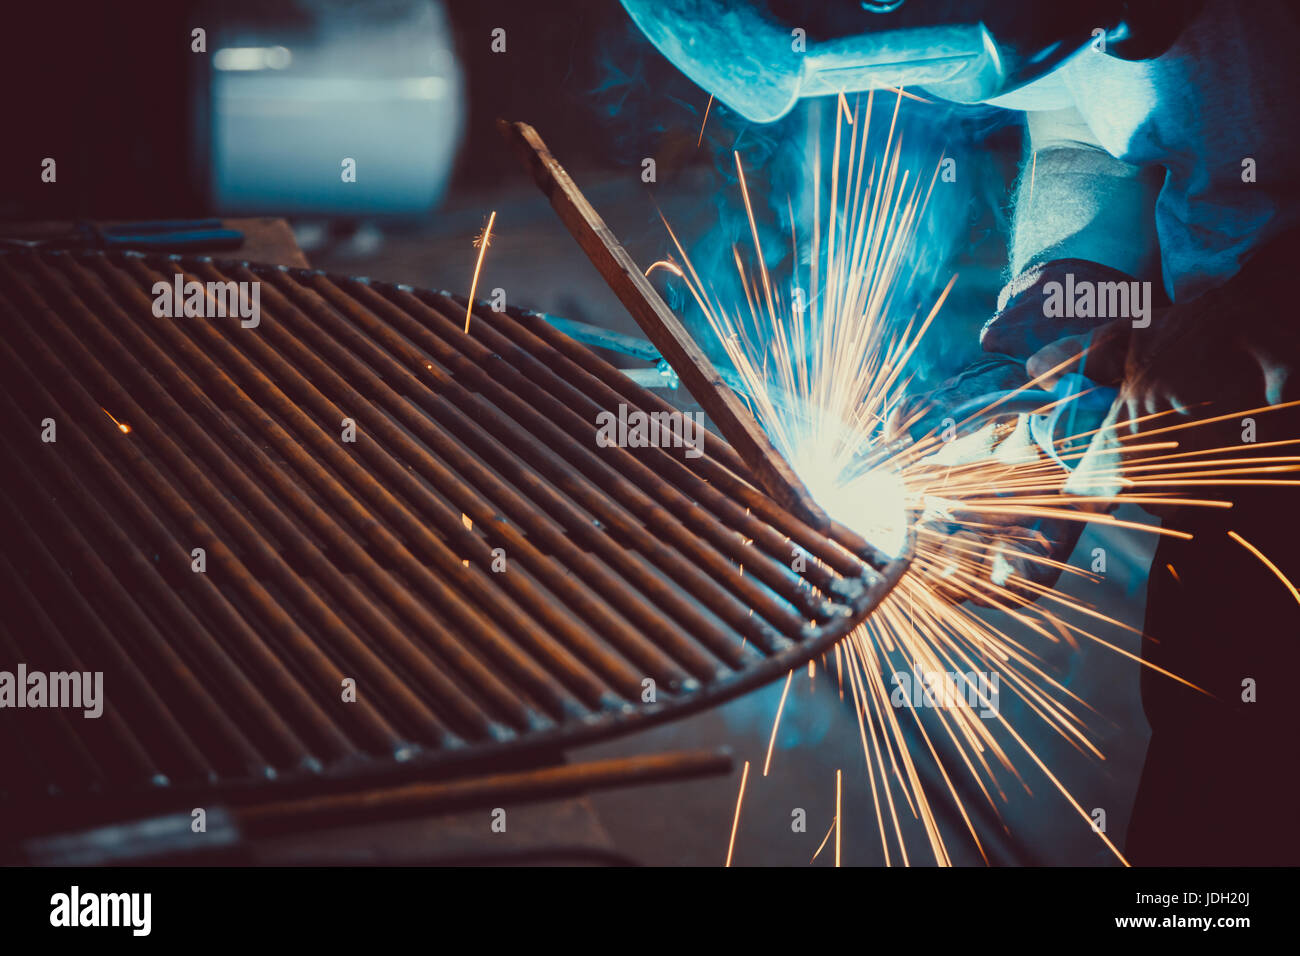 Welding Work. Erecting Technical Steel Industrial Steel Welder In Factory. Craftsman. Soft focus. Shallow DOF. Stock Photo